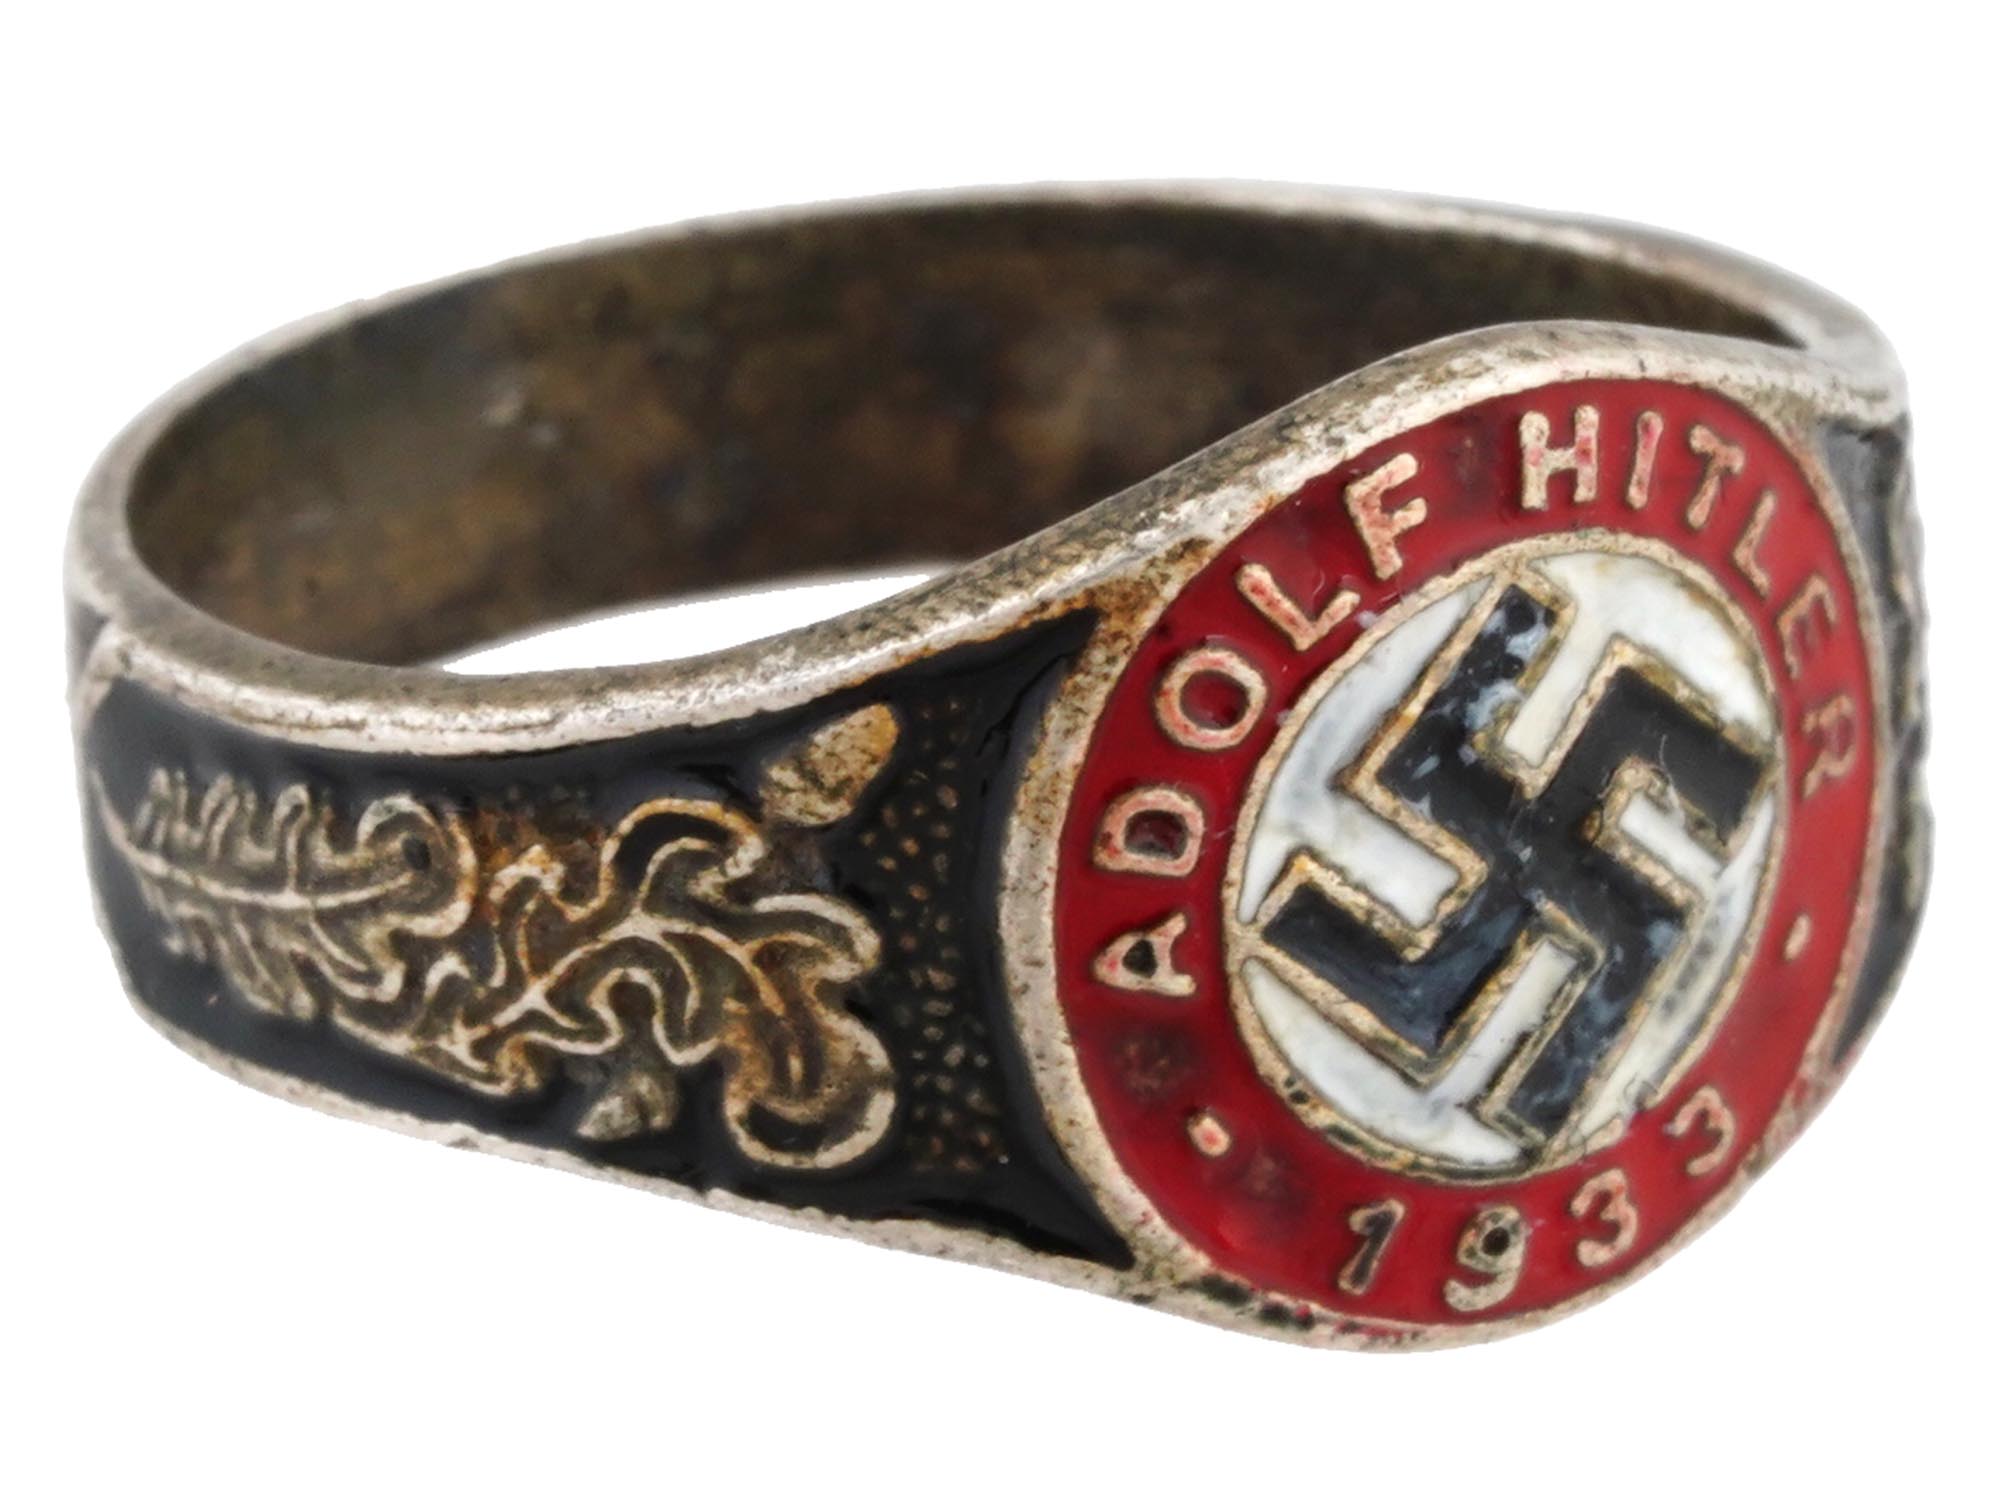 GERMAN WWII TYPE ADOLF HITLER 1933 SILVER RING PIC-1